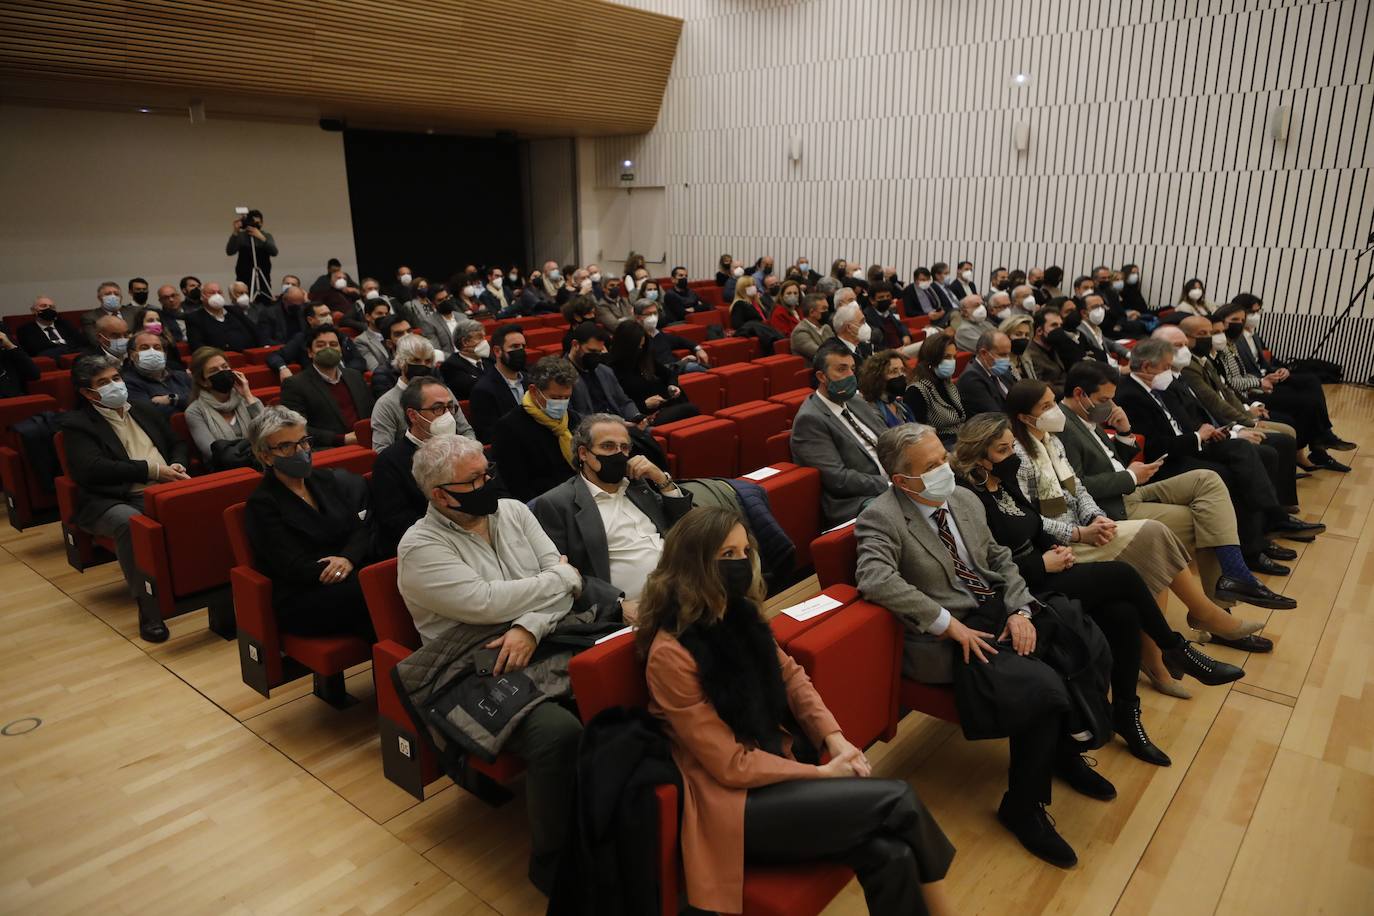 La entrega de los premios de arquitectura Félix Hernández en Córdoba, en imágenes